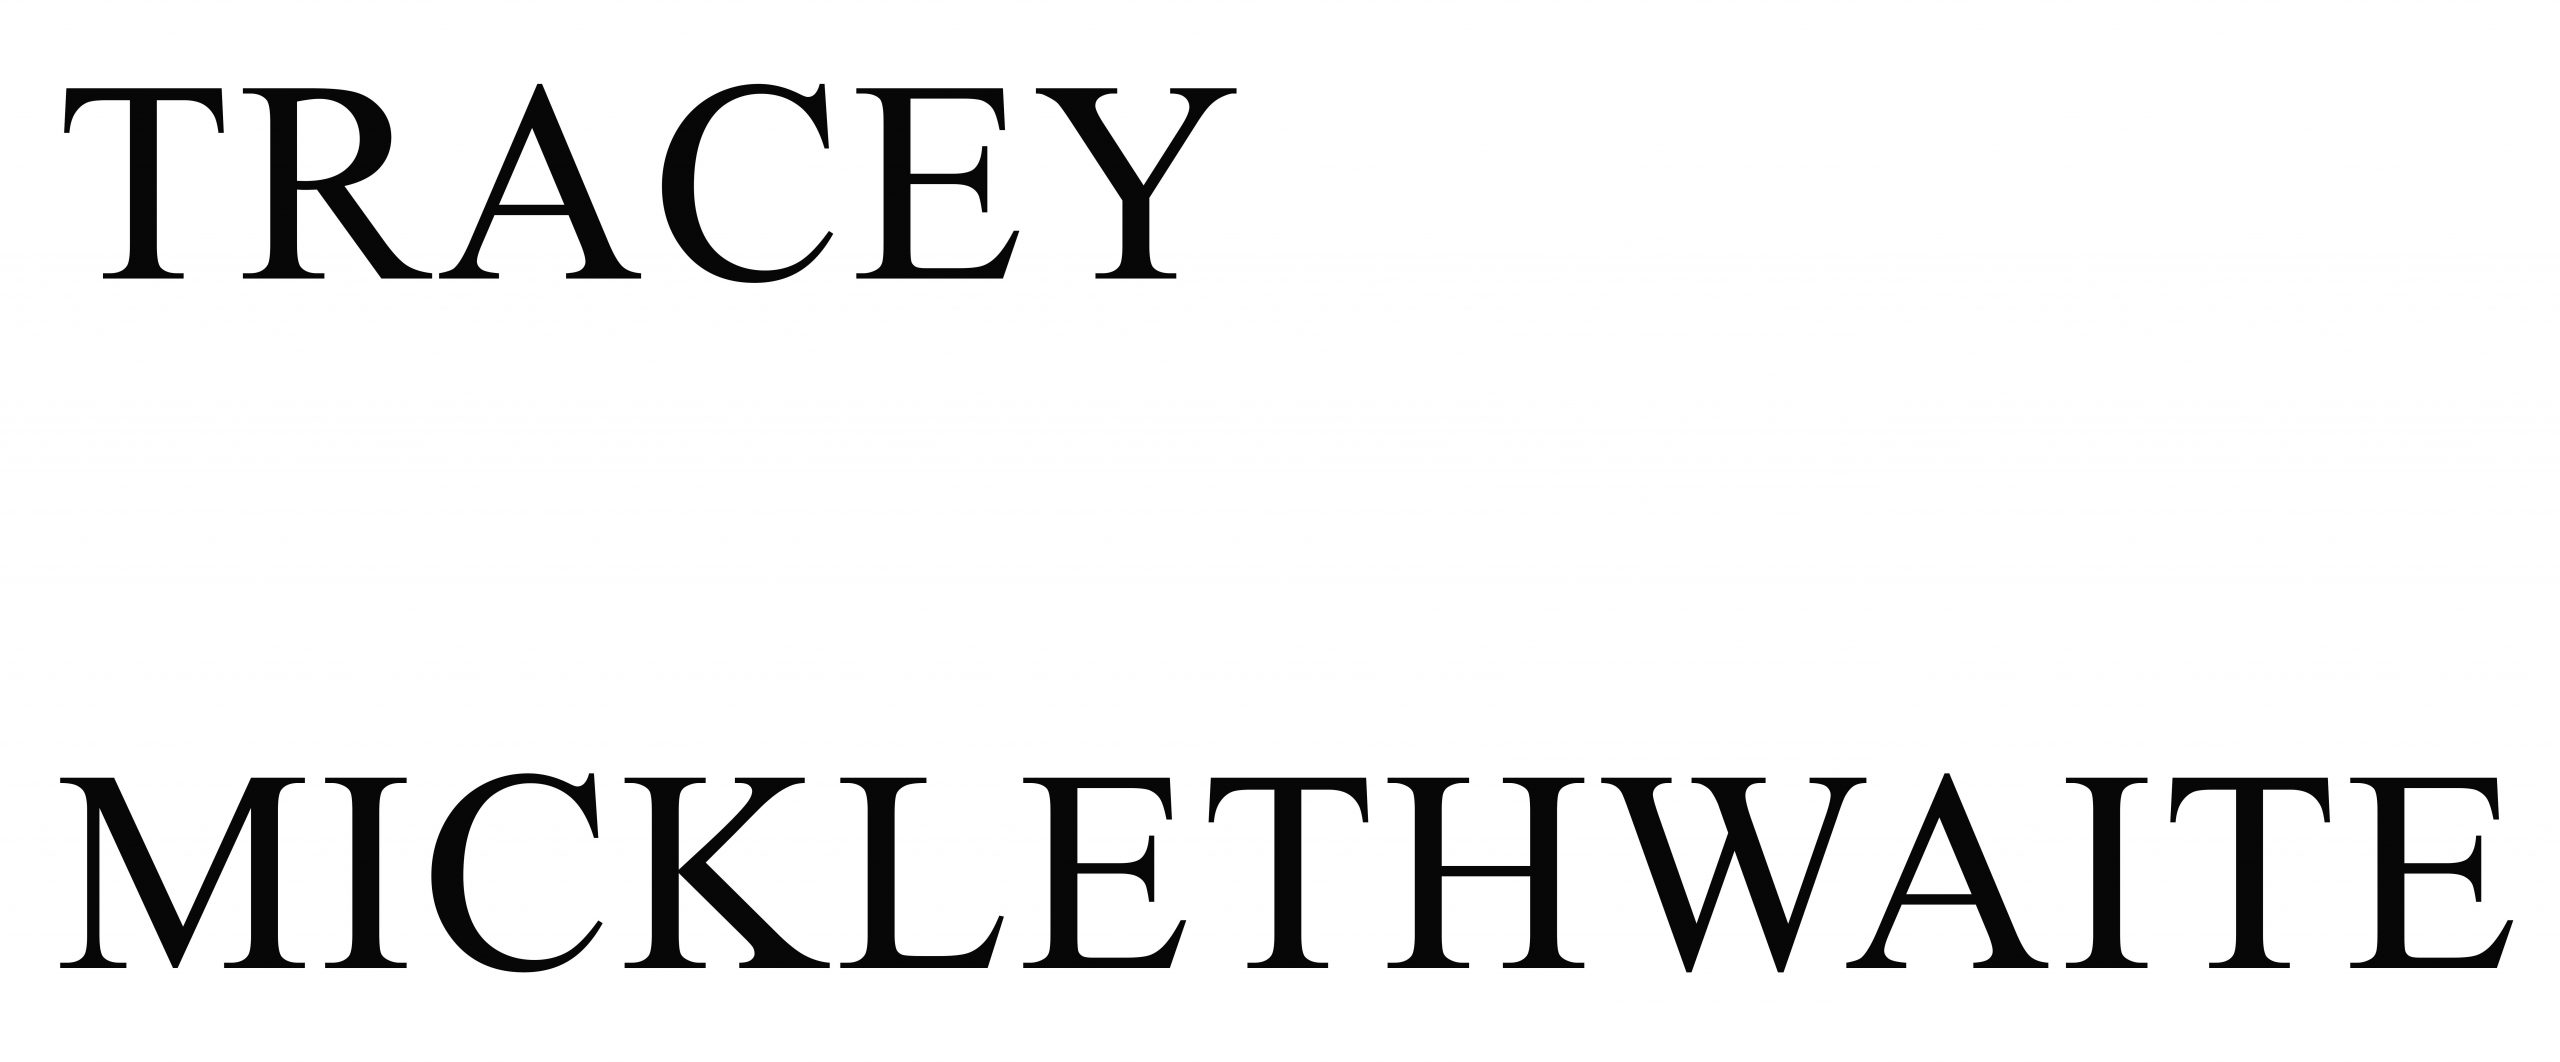 Tracey Micklethwaite